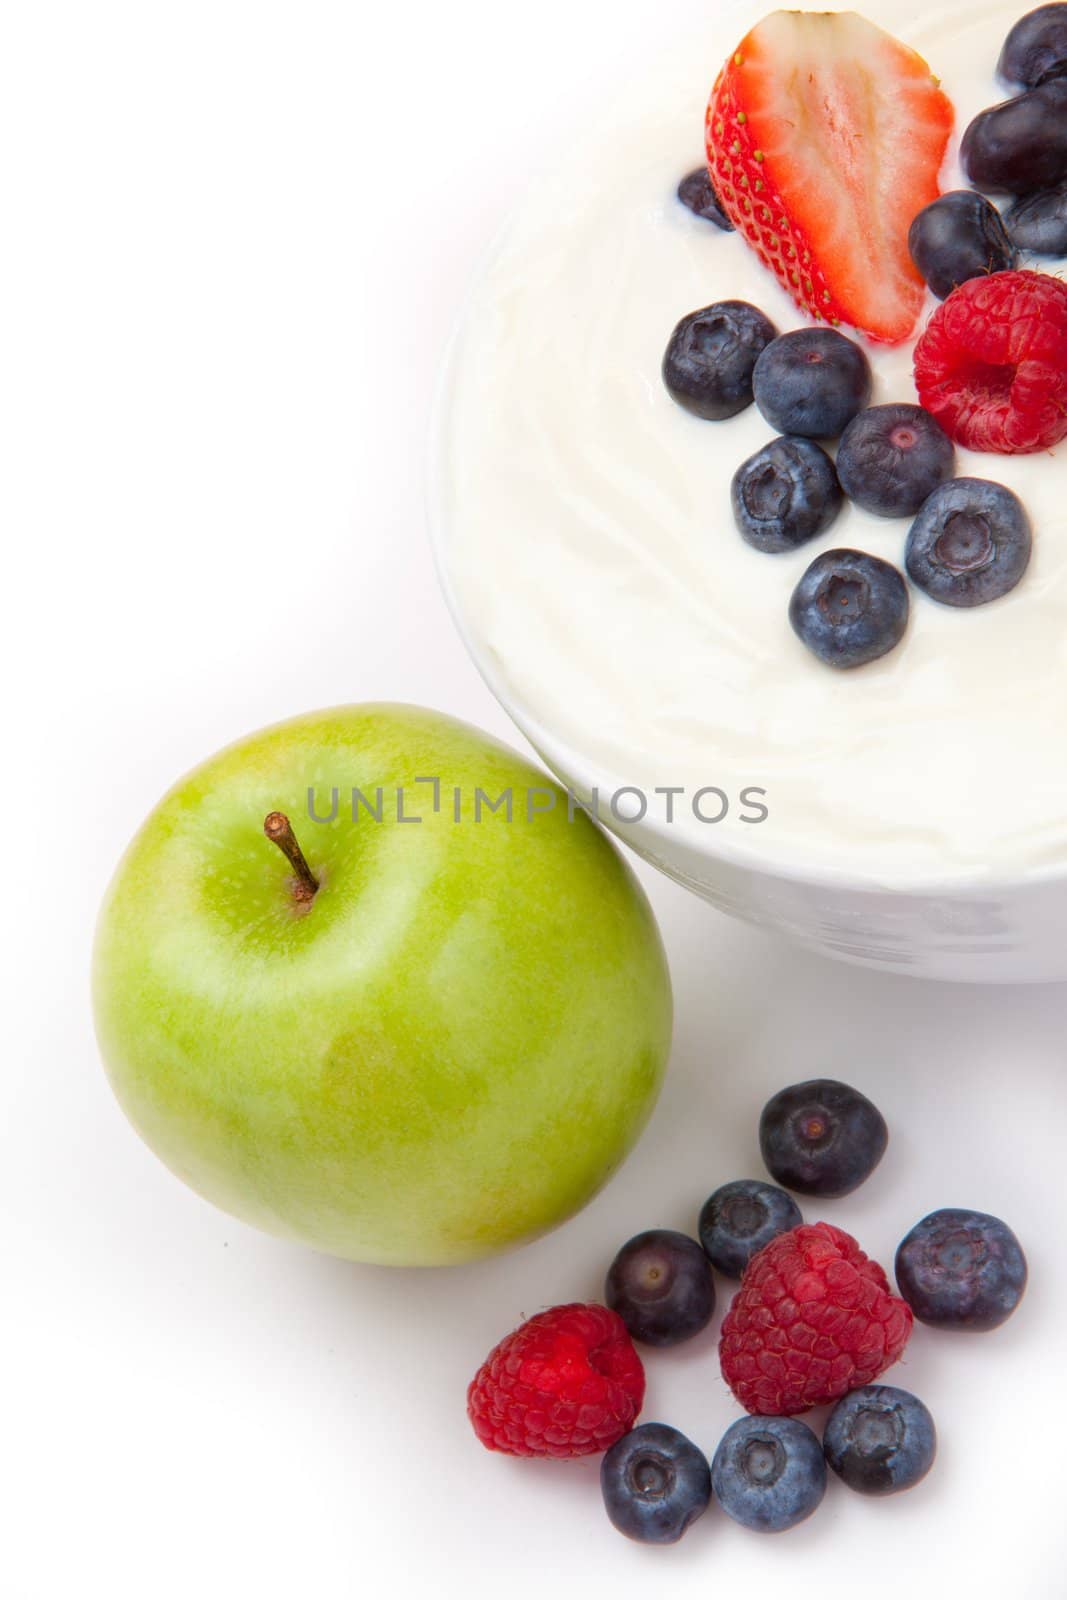 Berries cream and apple  by Wavebreakmedia